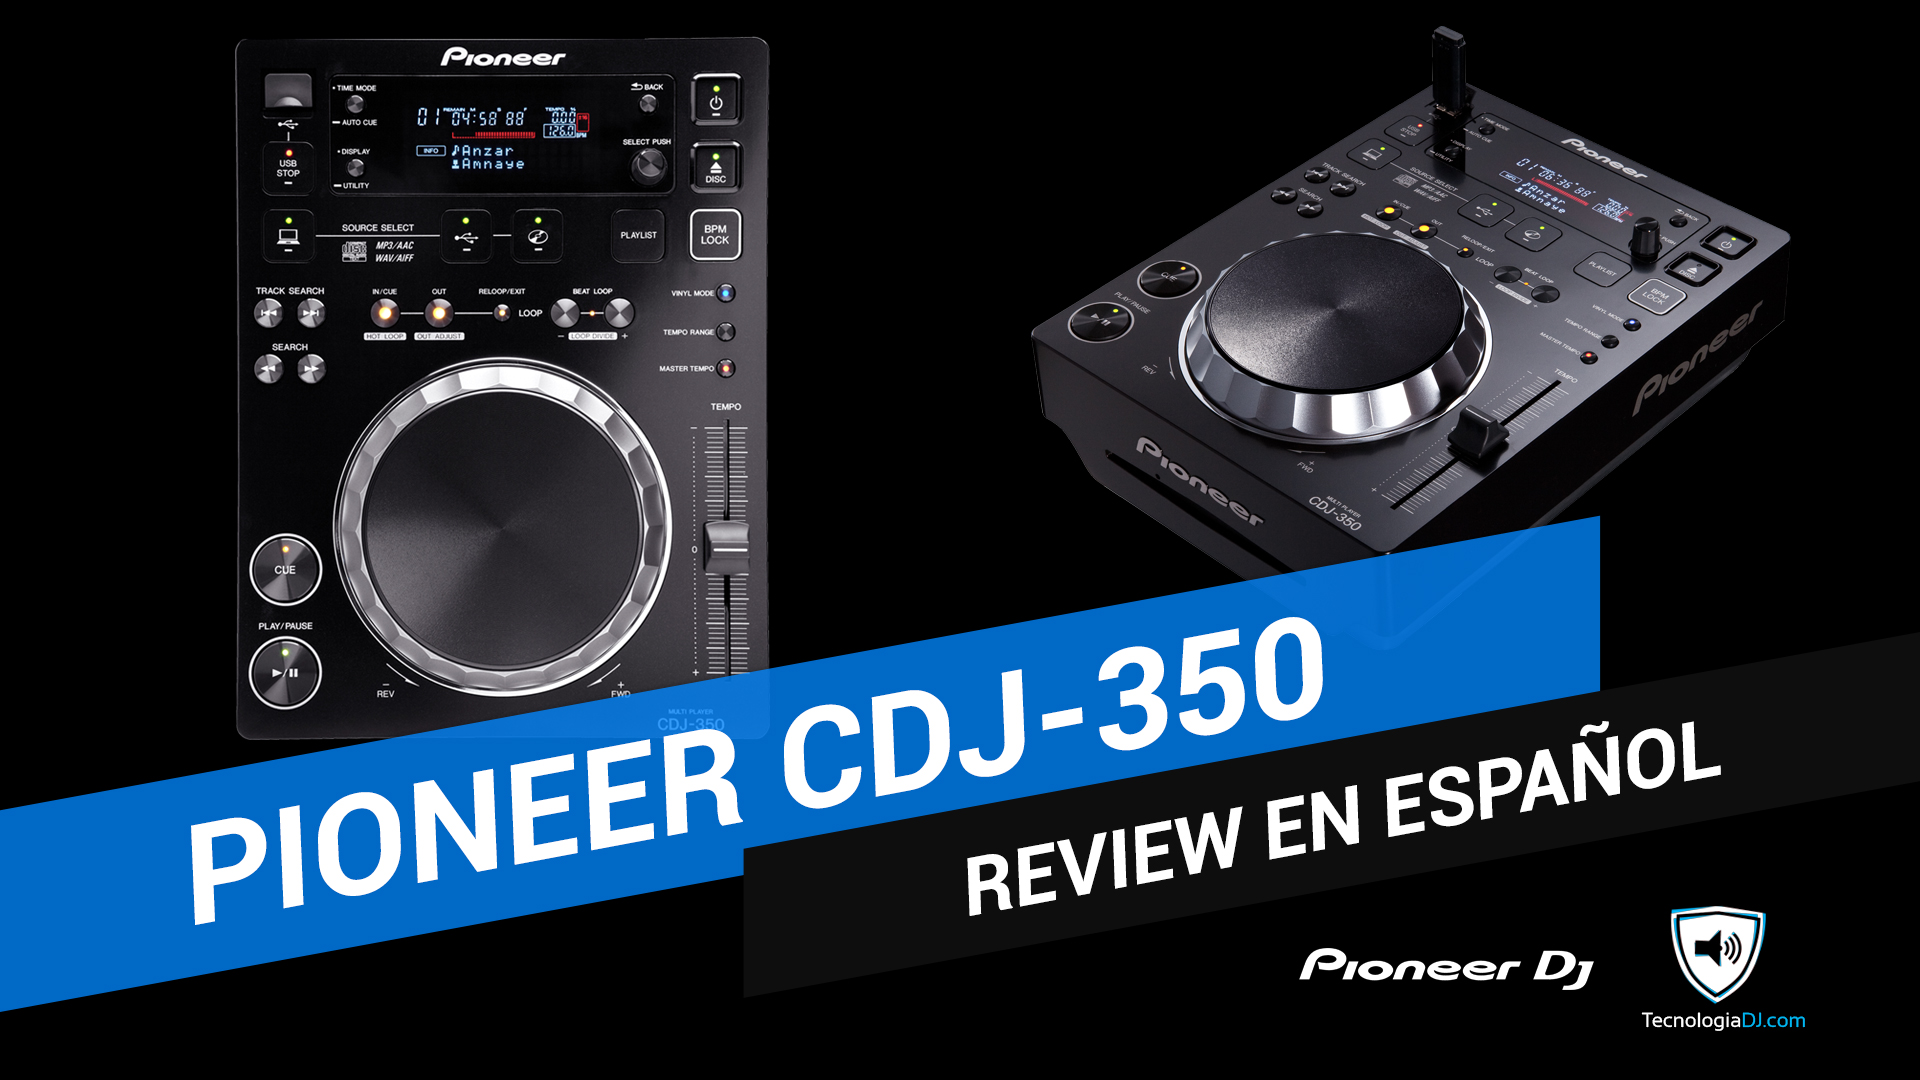 Review en español Pioneer CDJ-350